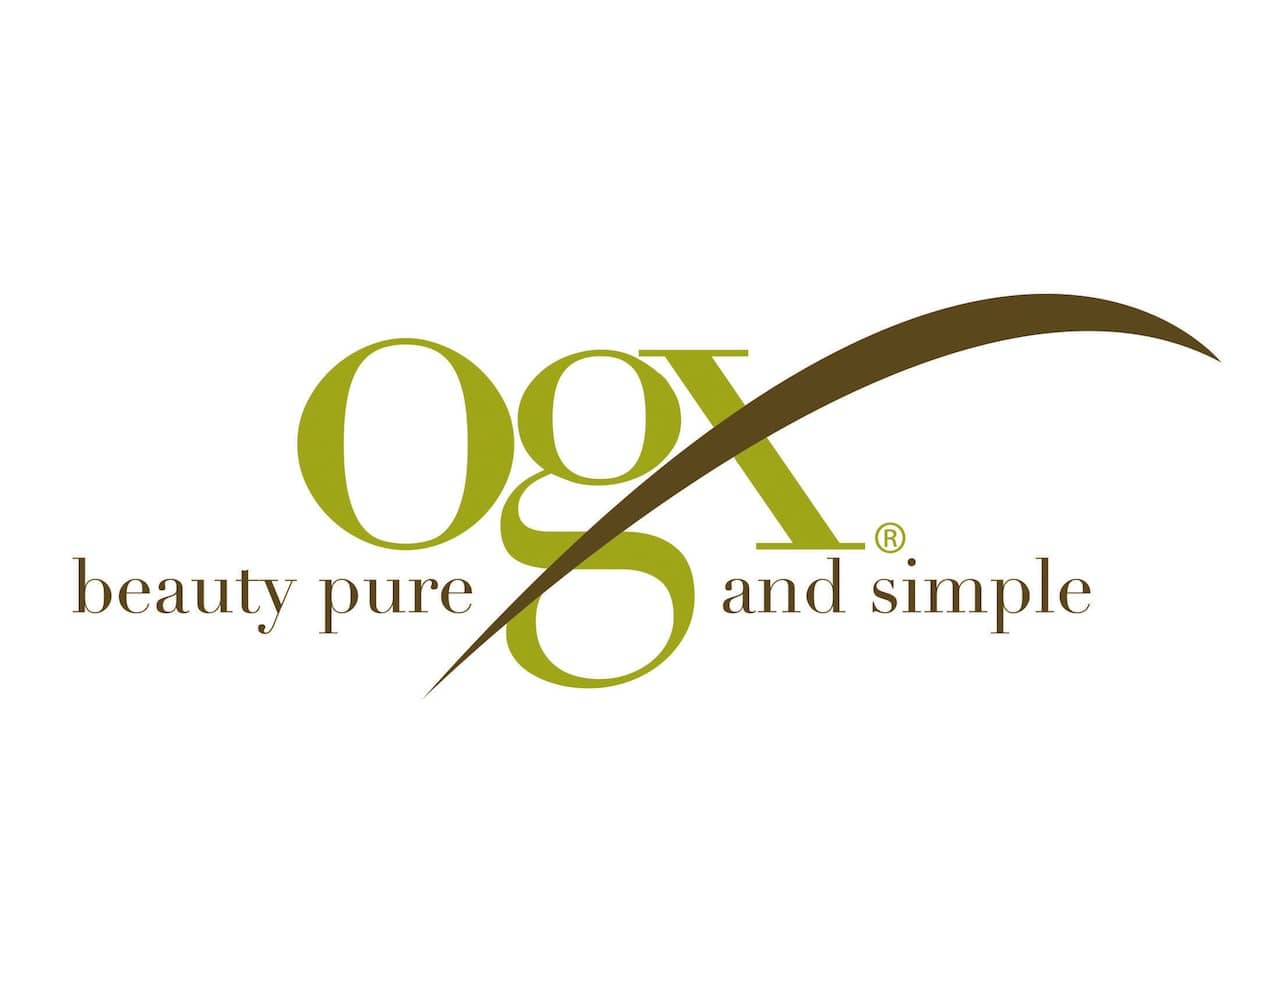 Logo-OGX